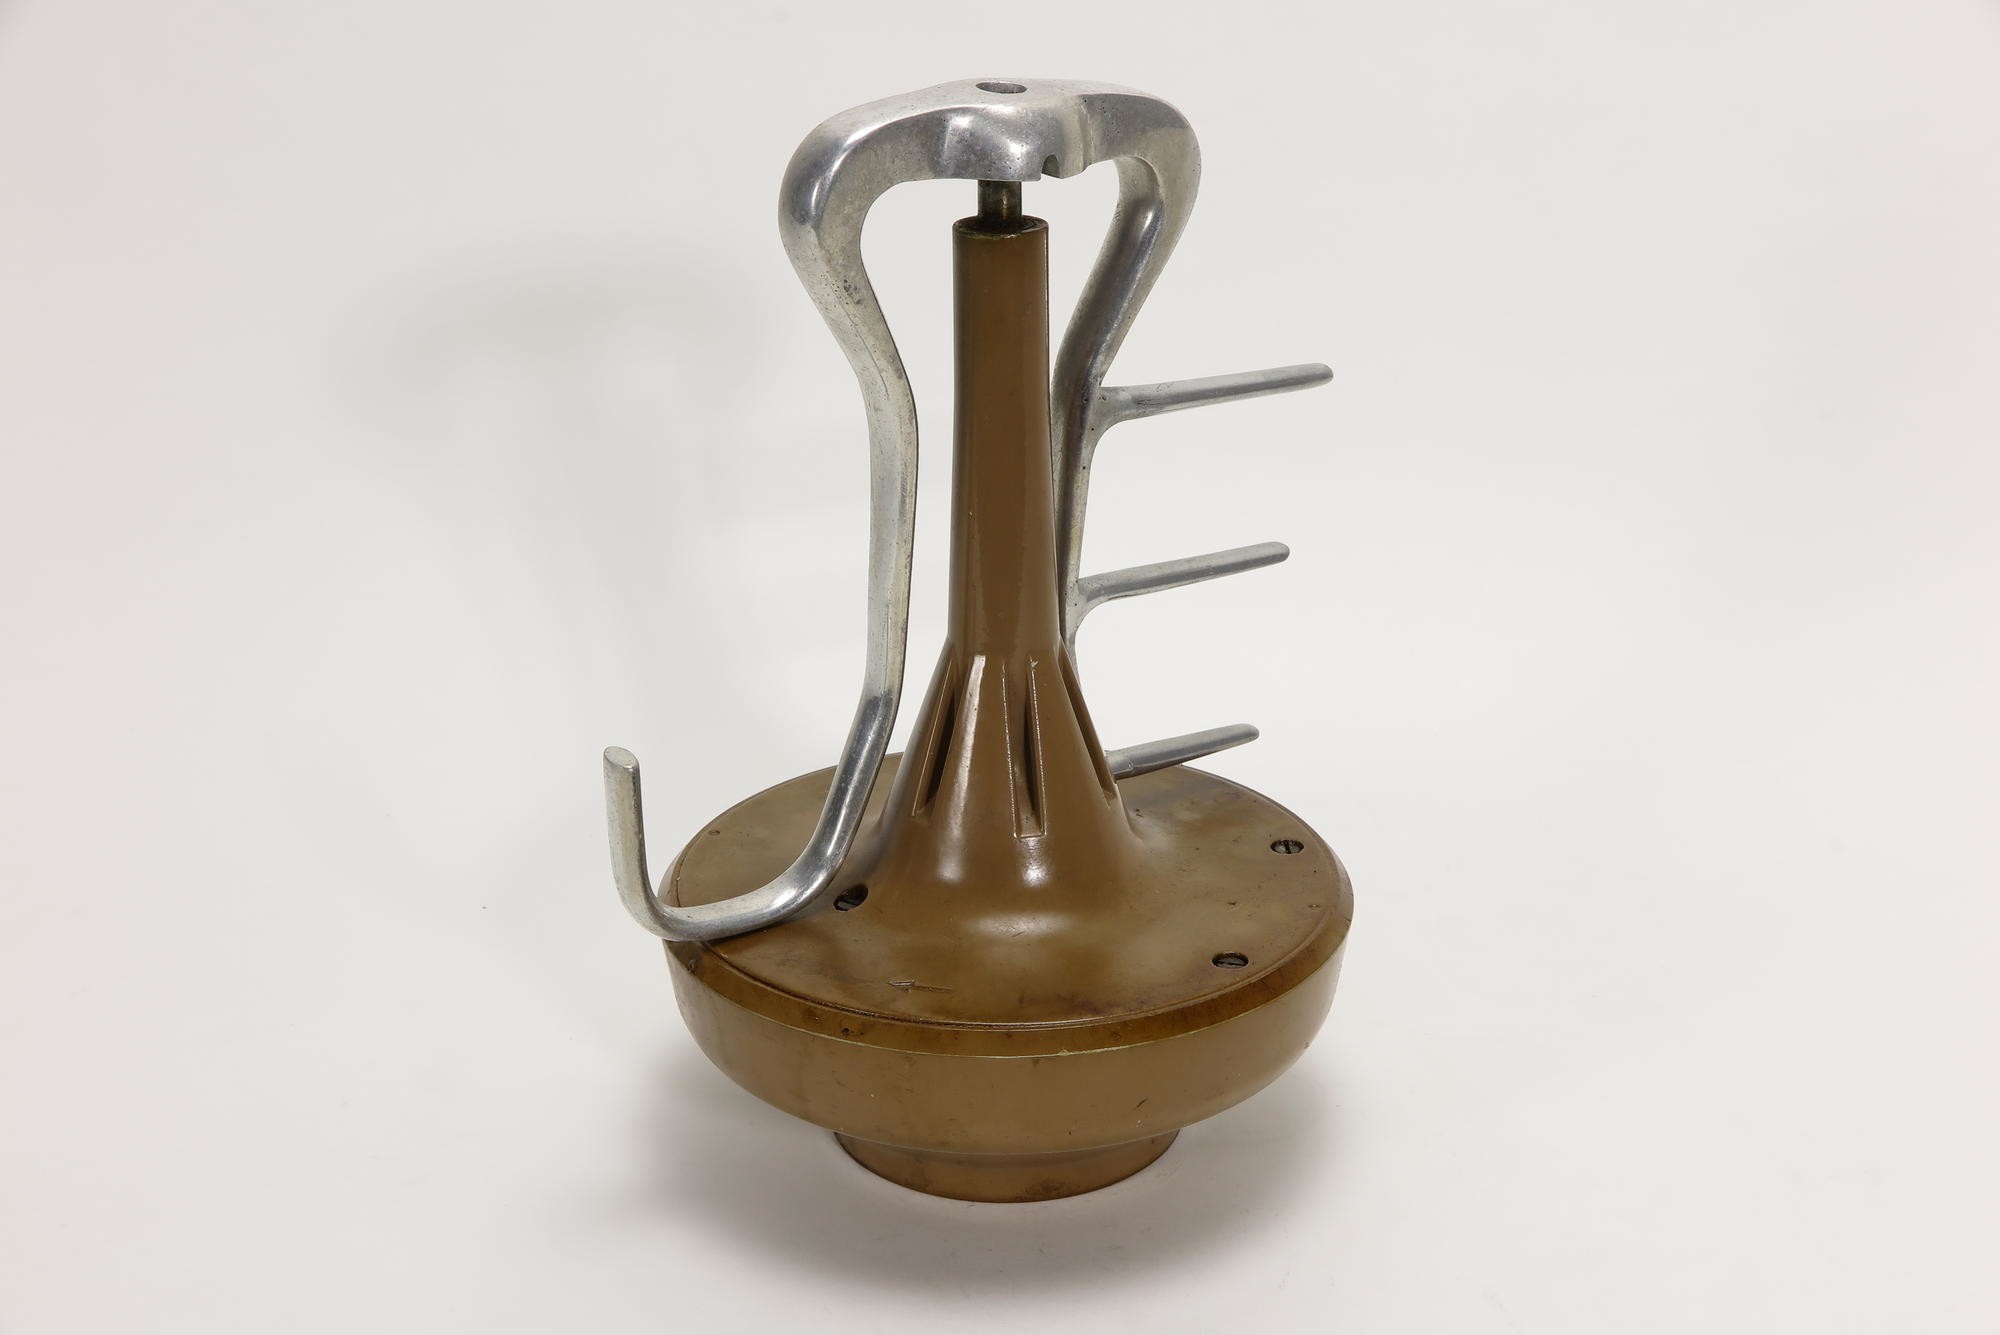 Getriebe mit Knetarm von Rührwerk, Zubehör zu Küchenmaschine AEG Typ MUE 3 (Stiftung Deutsches Technikmuseum Berlin CC0)